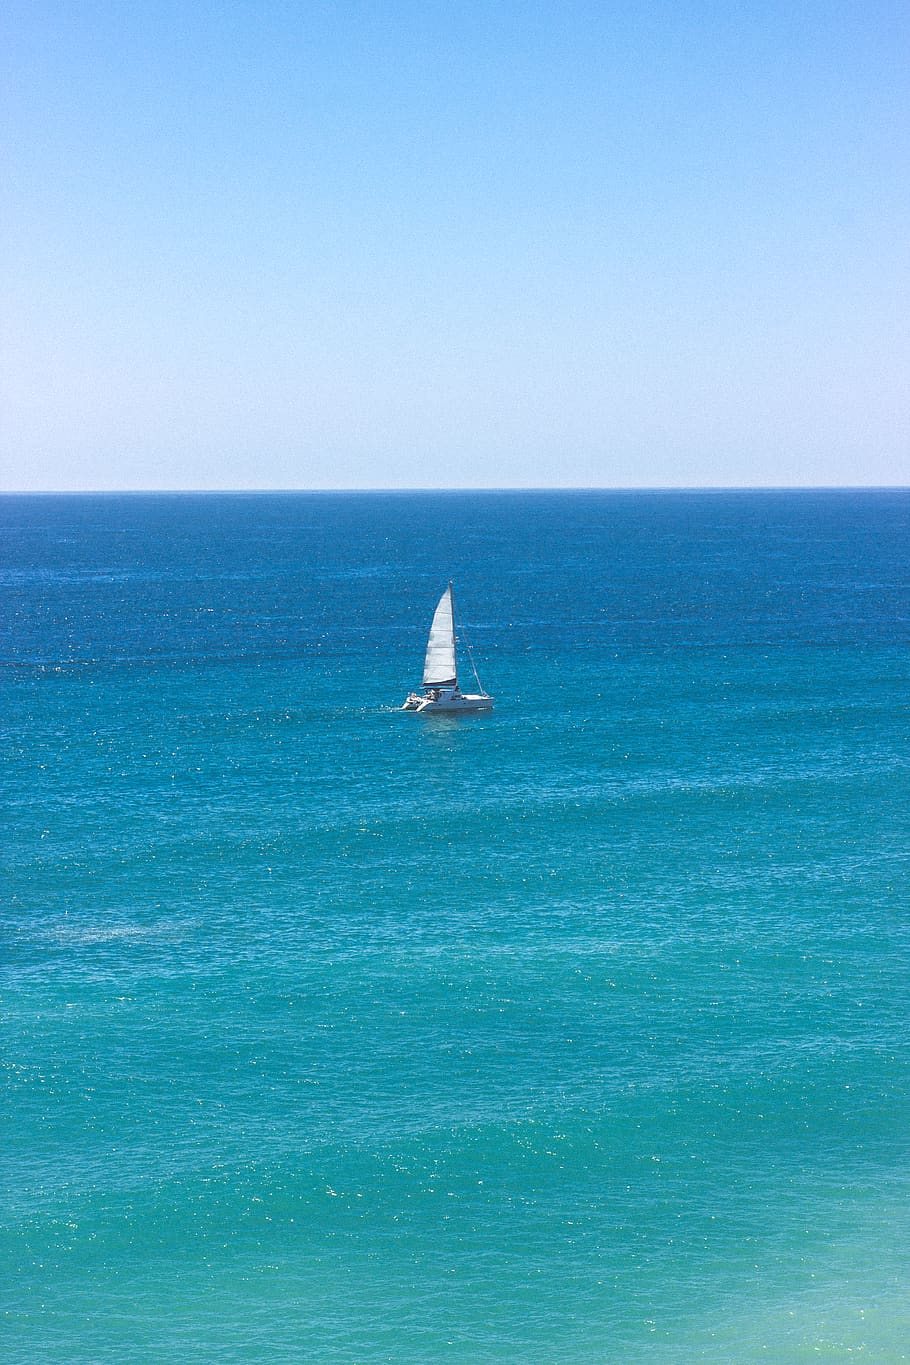 portugal, praia da marinha, boat, blue, sea, ocean, summer, HD wallpaper